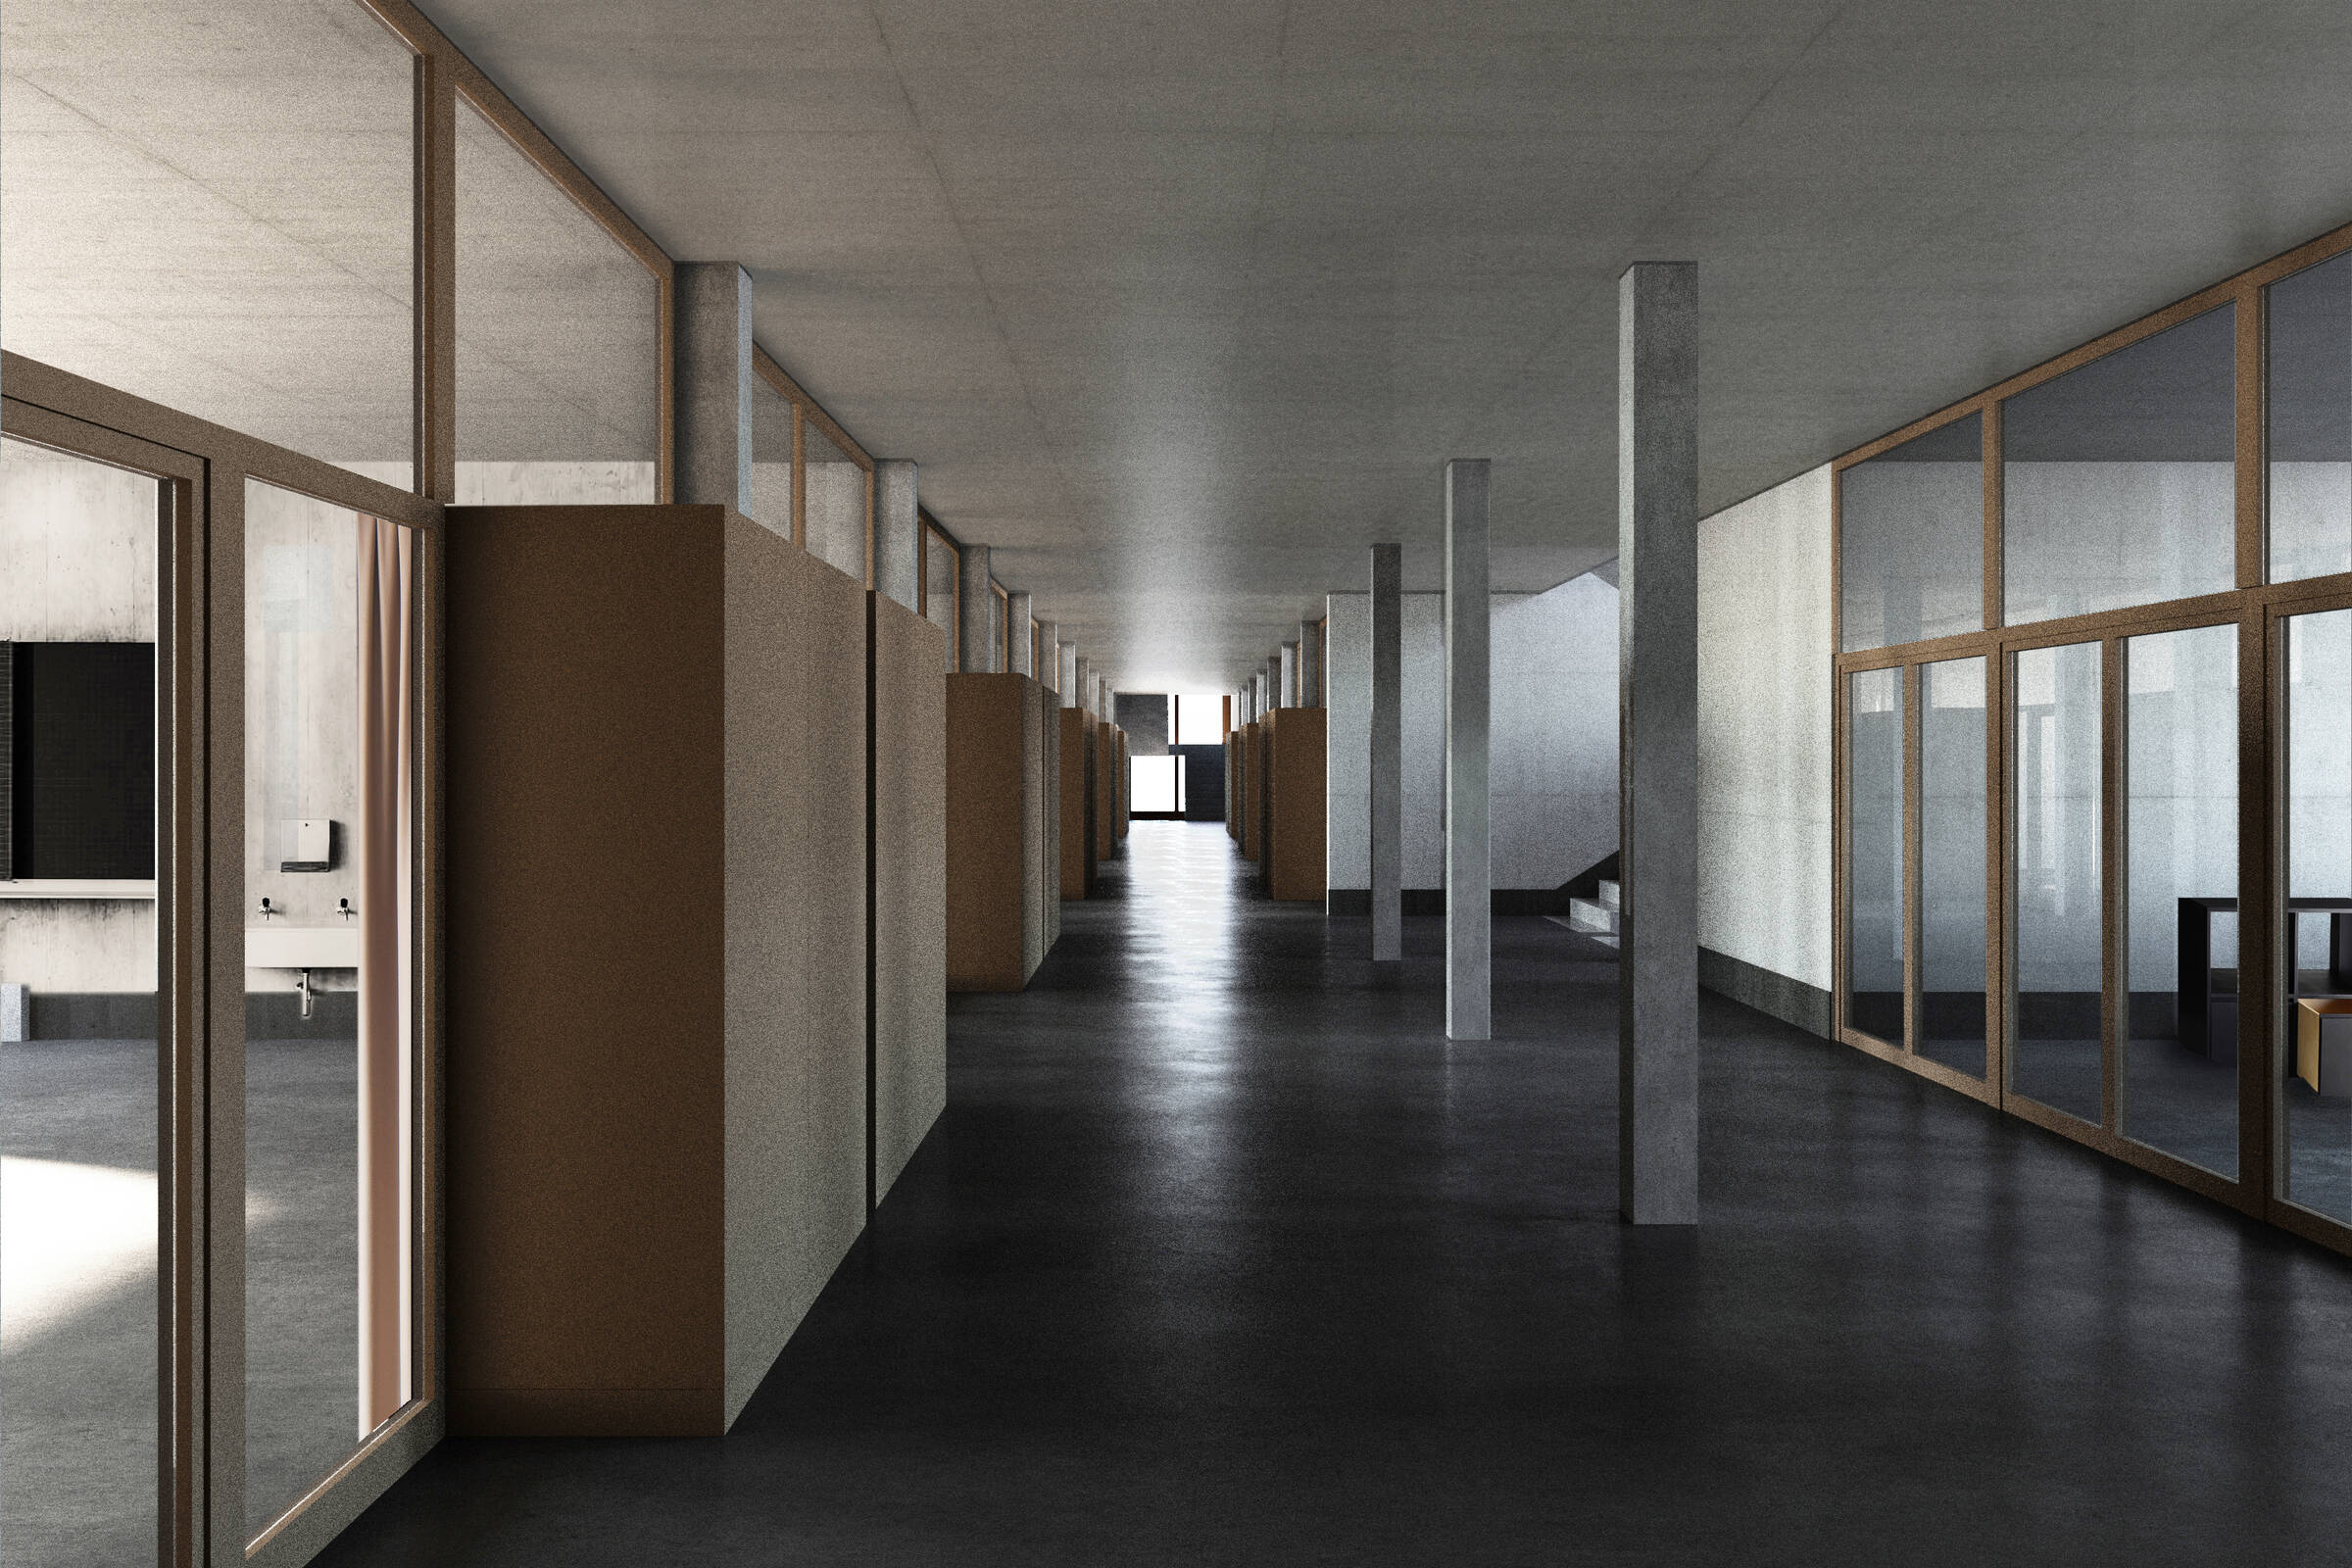 Schulhaus Baugewerbliche Berufsschule Zürich Korridor mit Begegnungszone